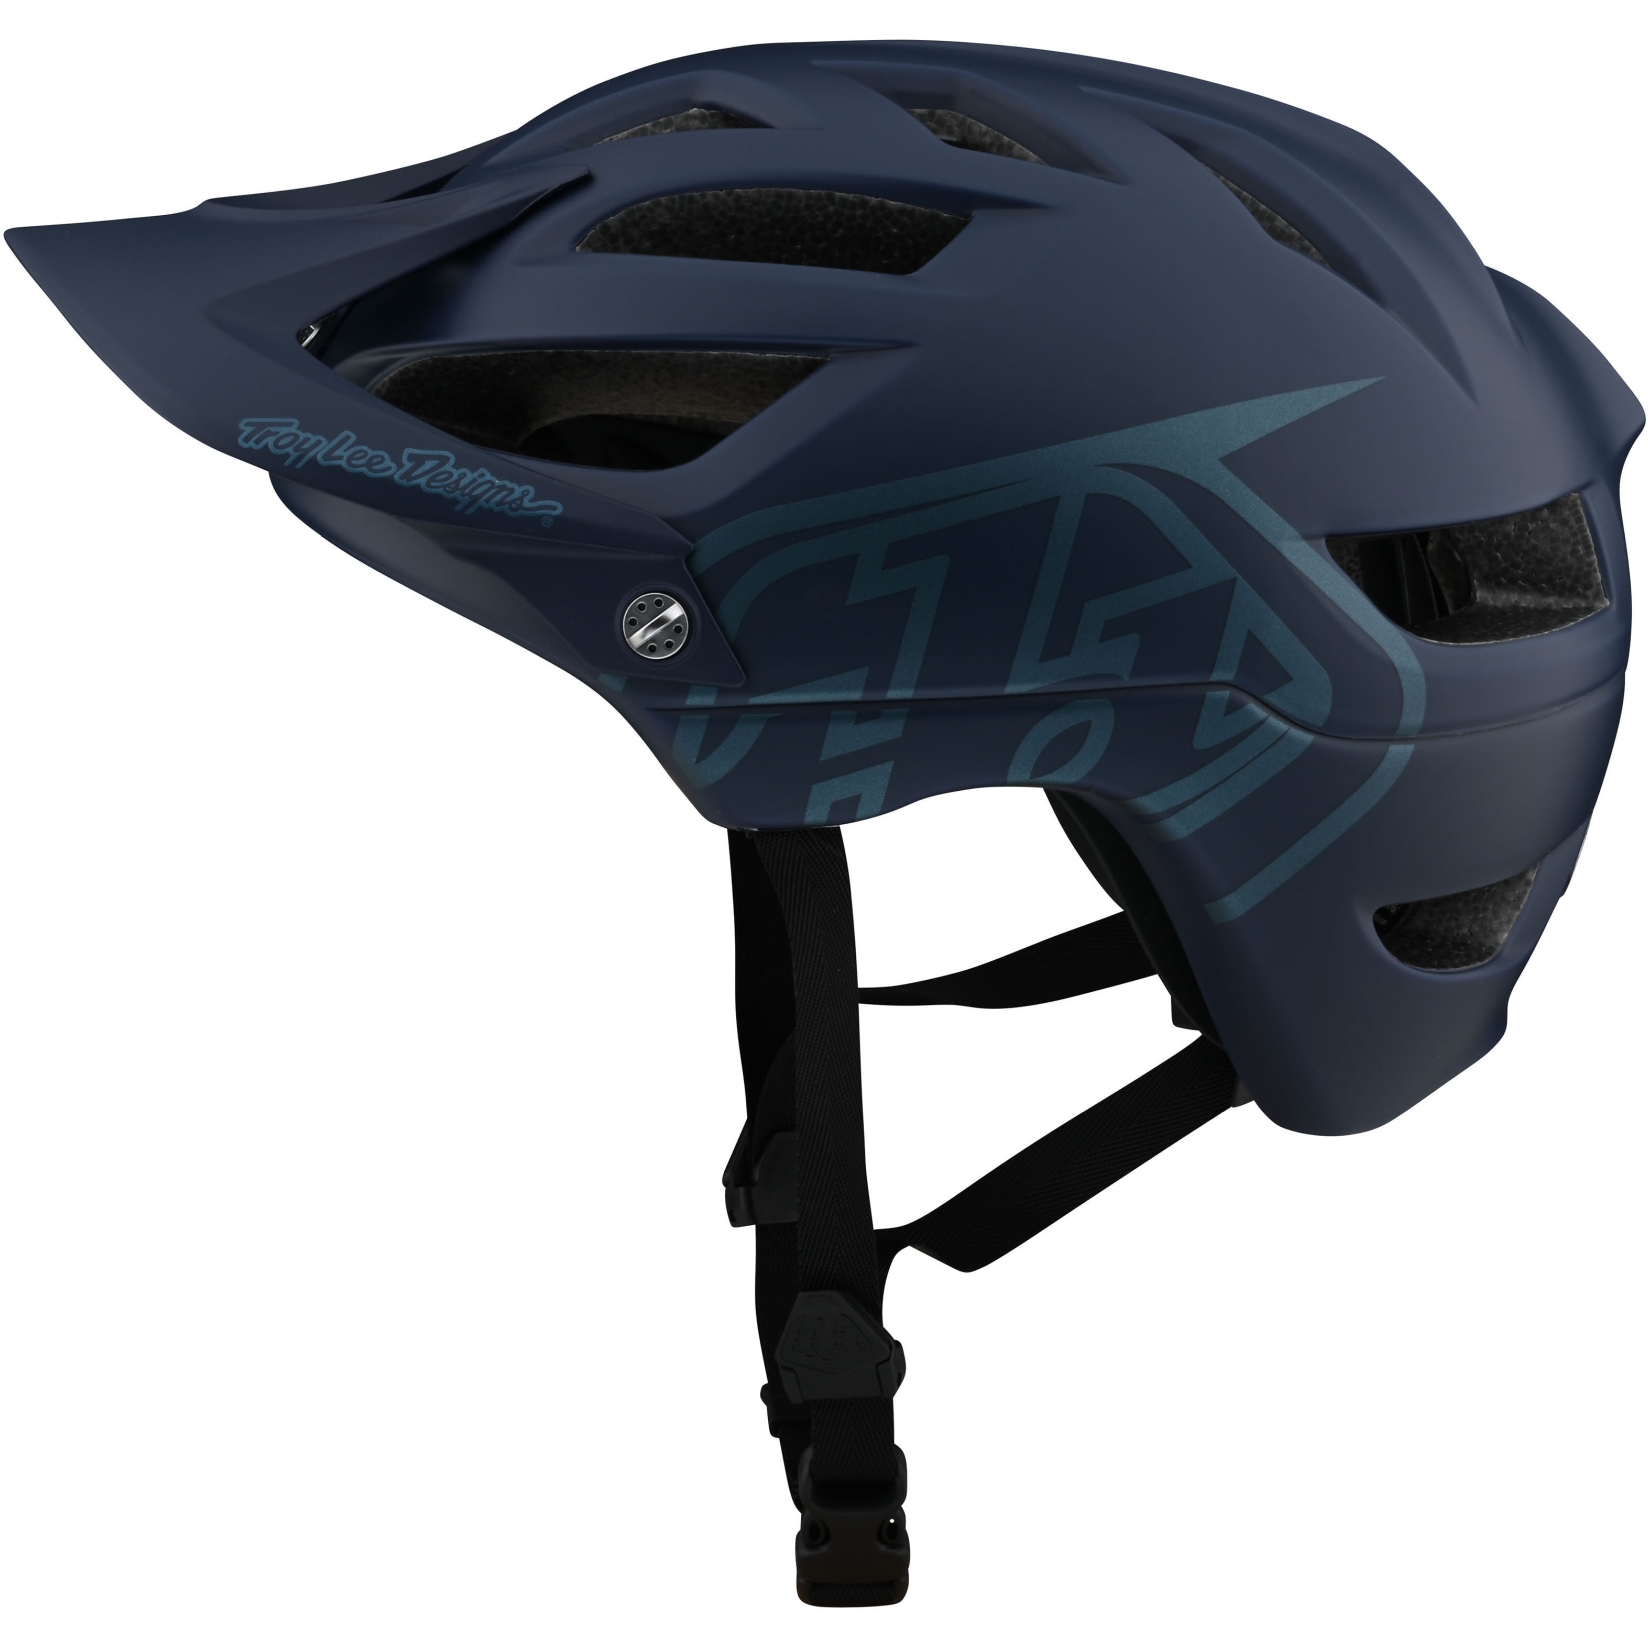 Productfoto van Troy Lee Designs A1 Drone Helmet - dark slate blue